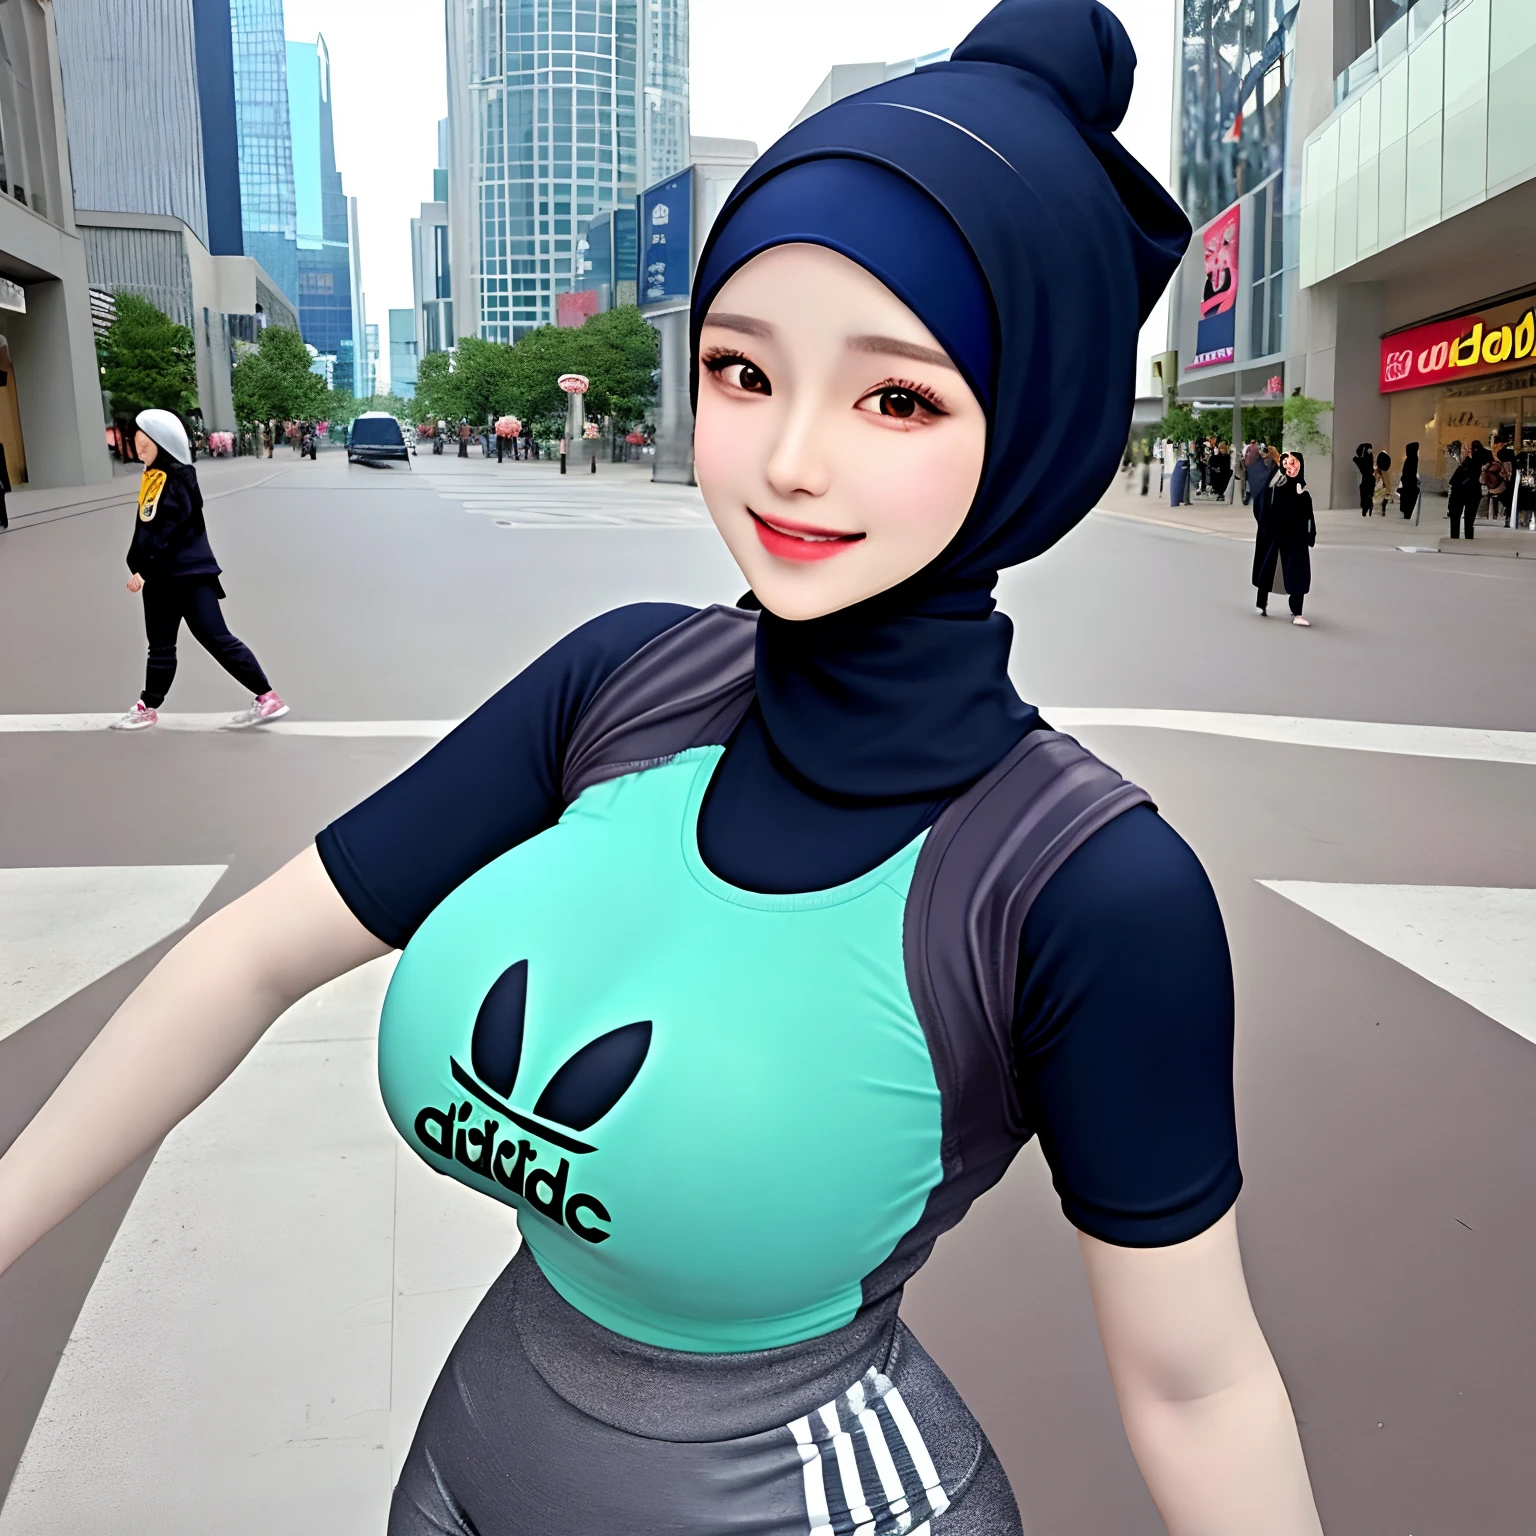 Hijab,Realistisch,Kpop-Idee,Mädchen,korean Mädchen,sexy,Schön,er groß,super große Brüste,(P-Tasse),glücklich und lächelnd sehr detailliertes Gesicht,Adidas enges T-Shirt,Kurzer Hijab,und langes, enges Hosen-Outfit,Sexy Pose in der Mall Street